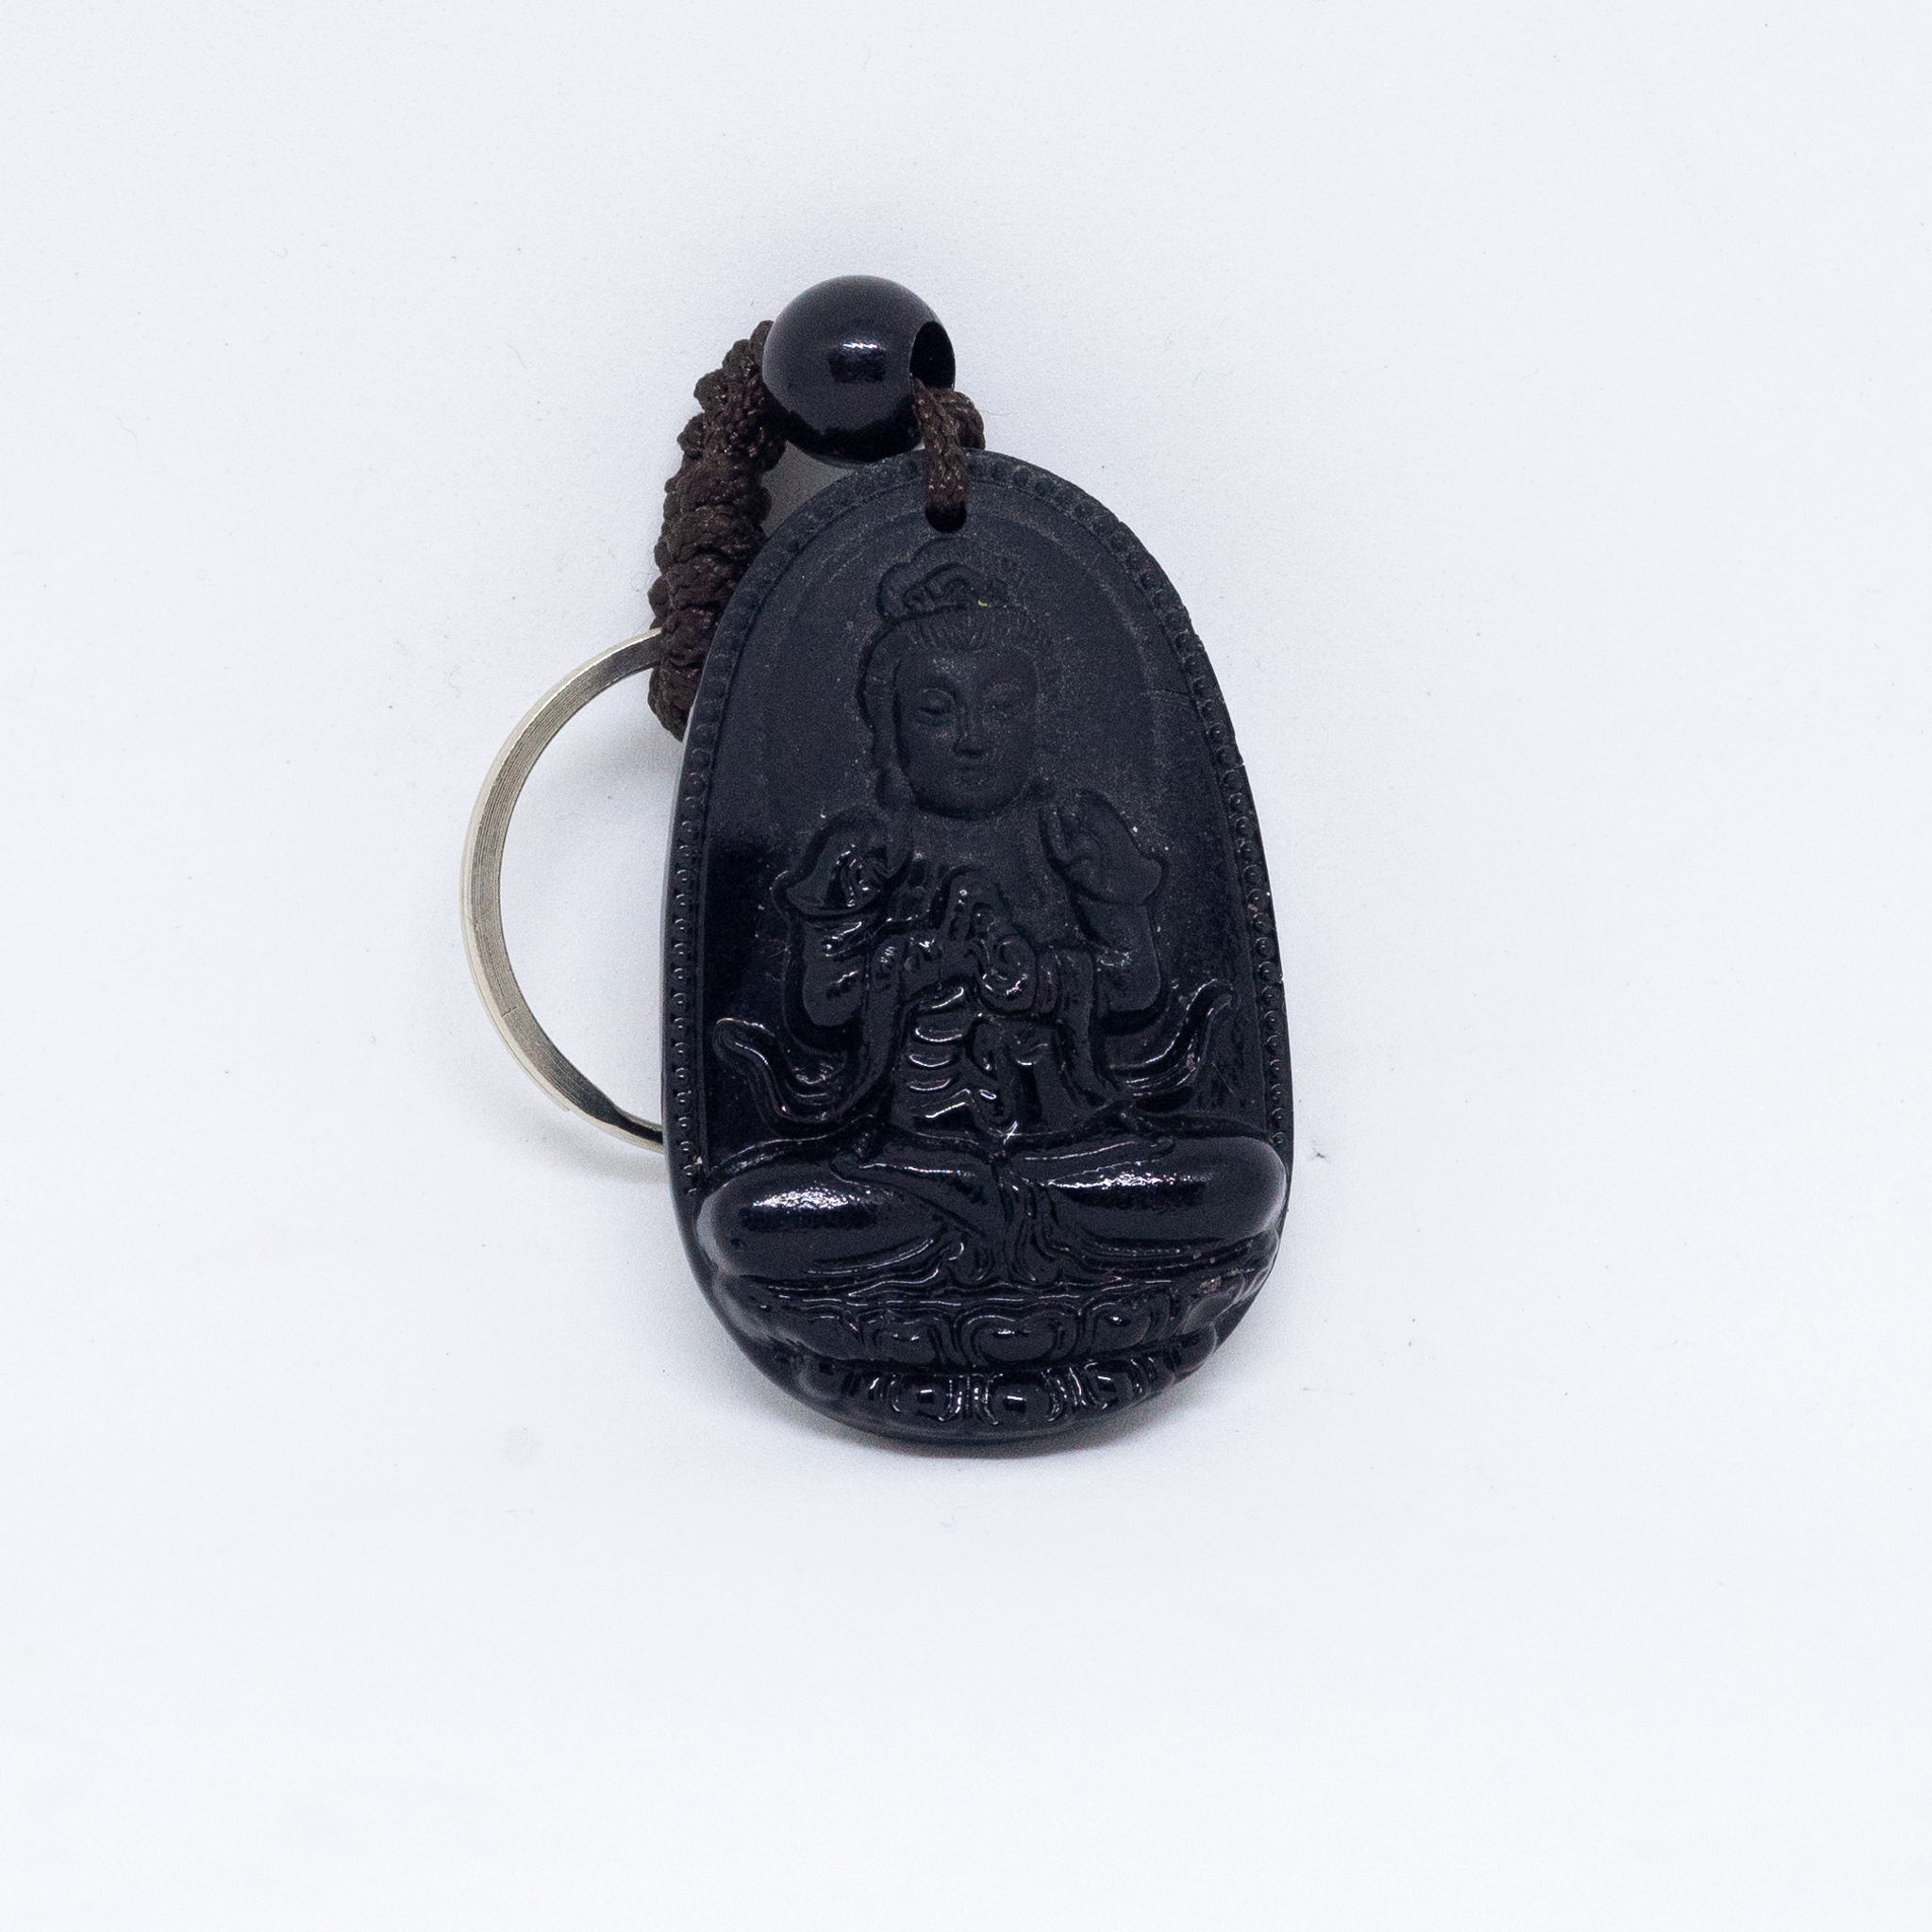 Móc chìa khóa trang trí hình Phật bằng đá màu đen với nhiều lựa chọn kiểu dáng